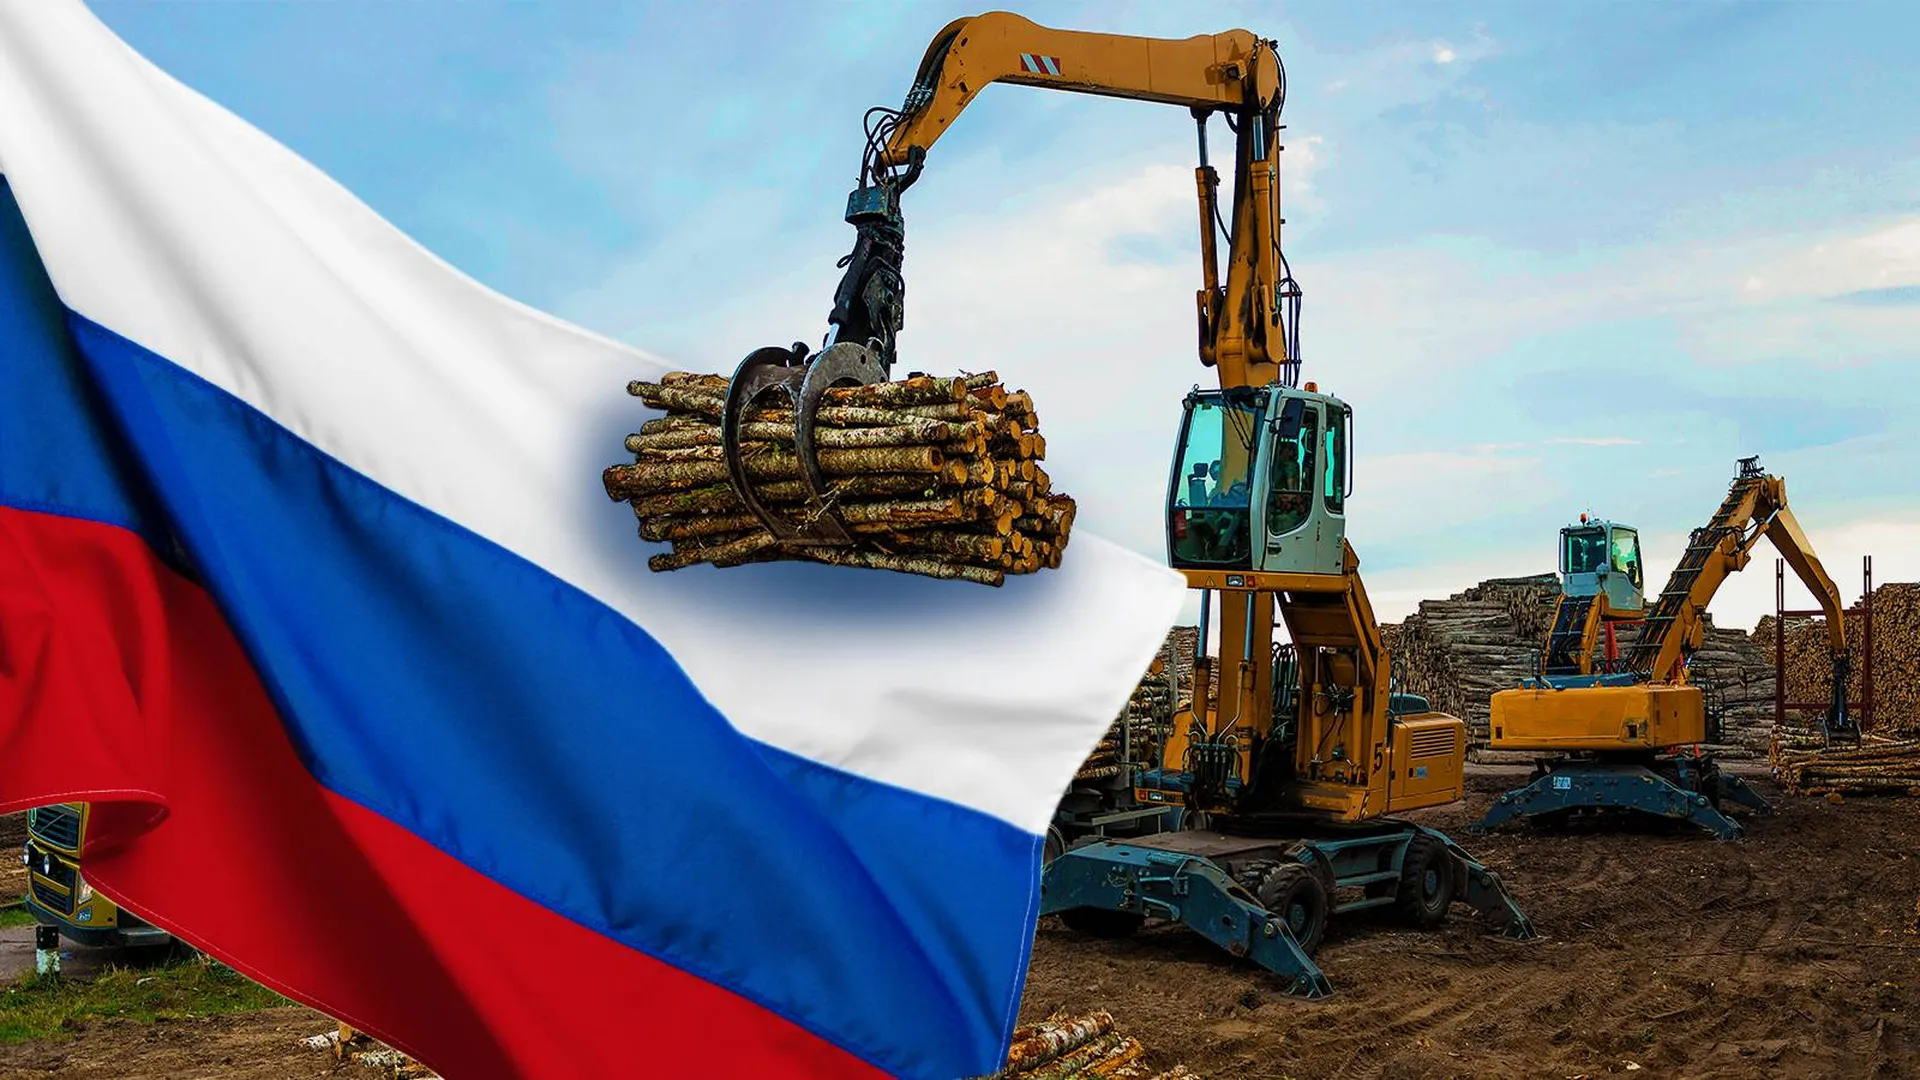 Лесозаготовщик с древесиной и флаг России